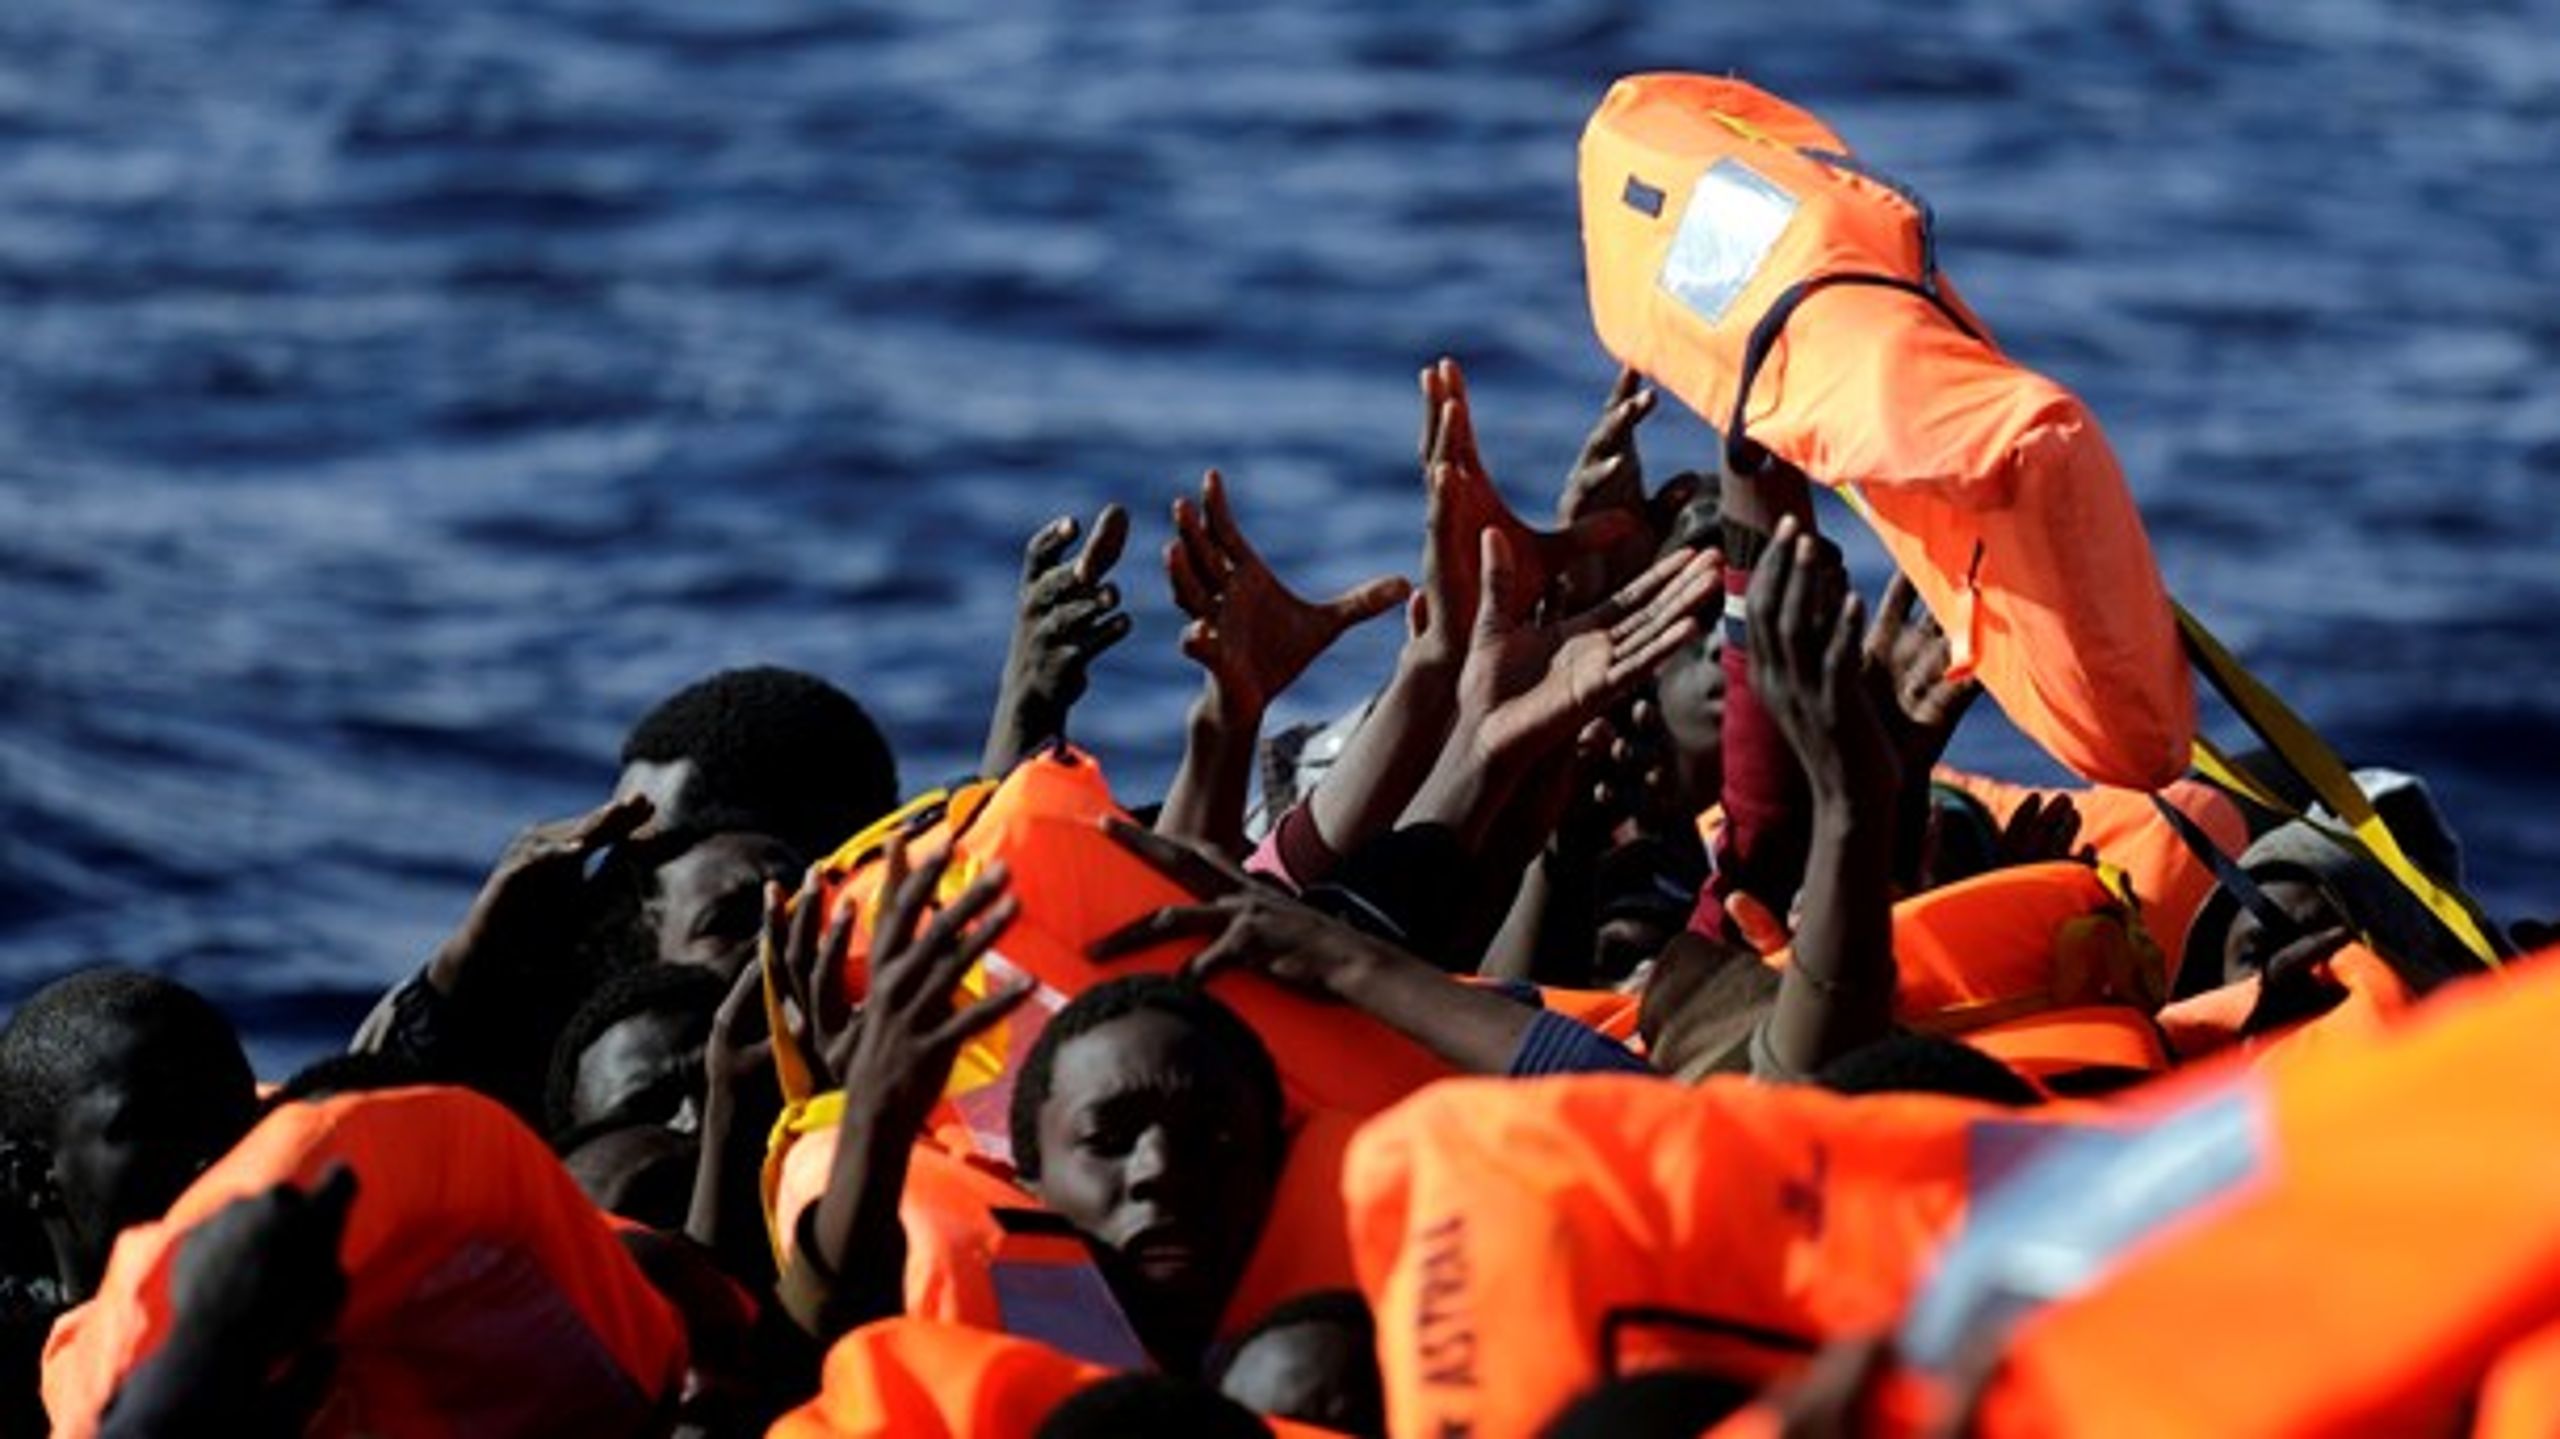 Udenrigsminister Jeppe Kofod (S) ønsker at rykke asylbehandlingen uden for Europas grænser, så færre mennesker sætter livet på spil i Middelhavet for at søge asyl i Danmark.